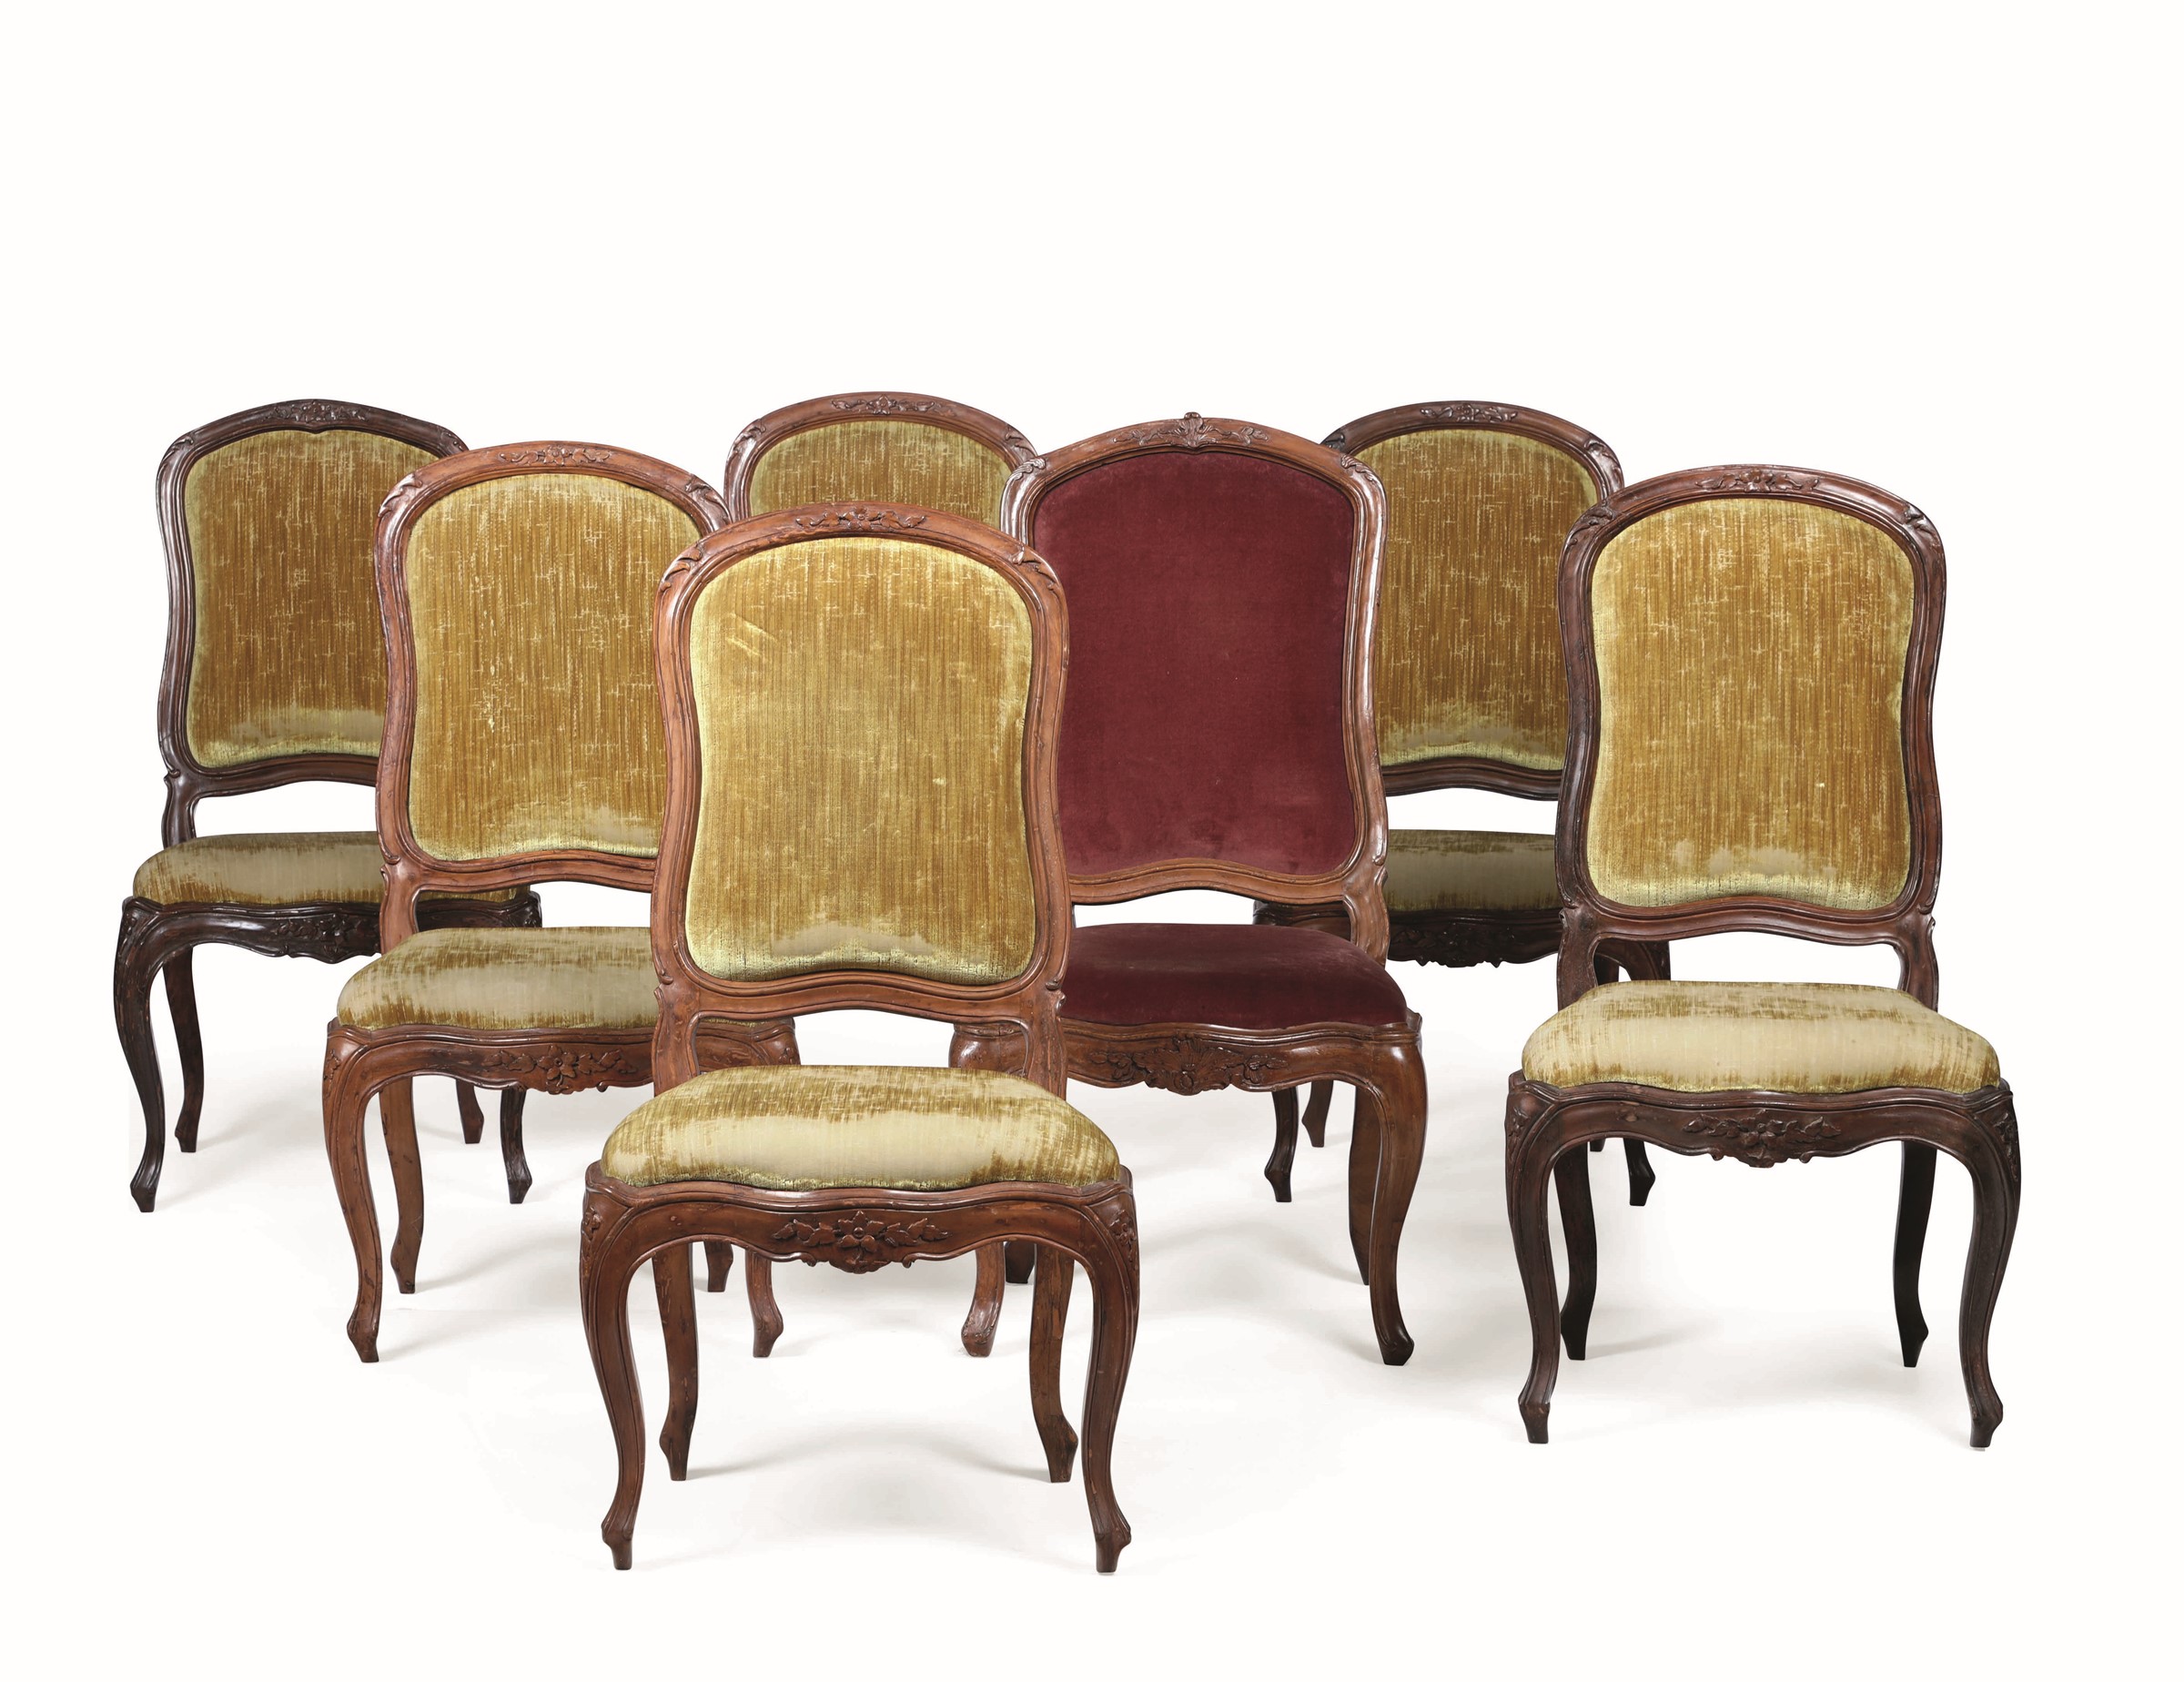 Sei sedie Luigi XV in noce intagliato, XVIII secolo, - decori intagliati a motivo [...]